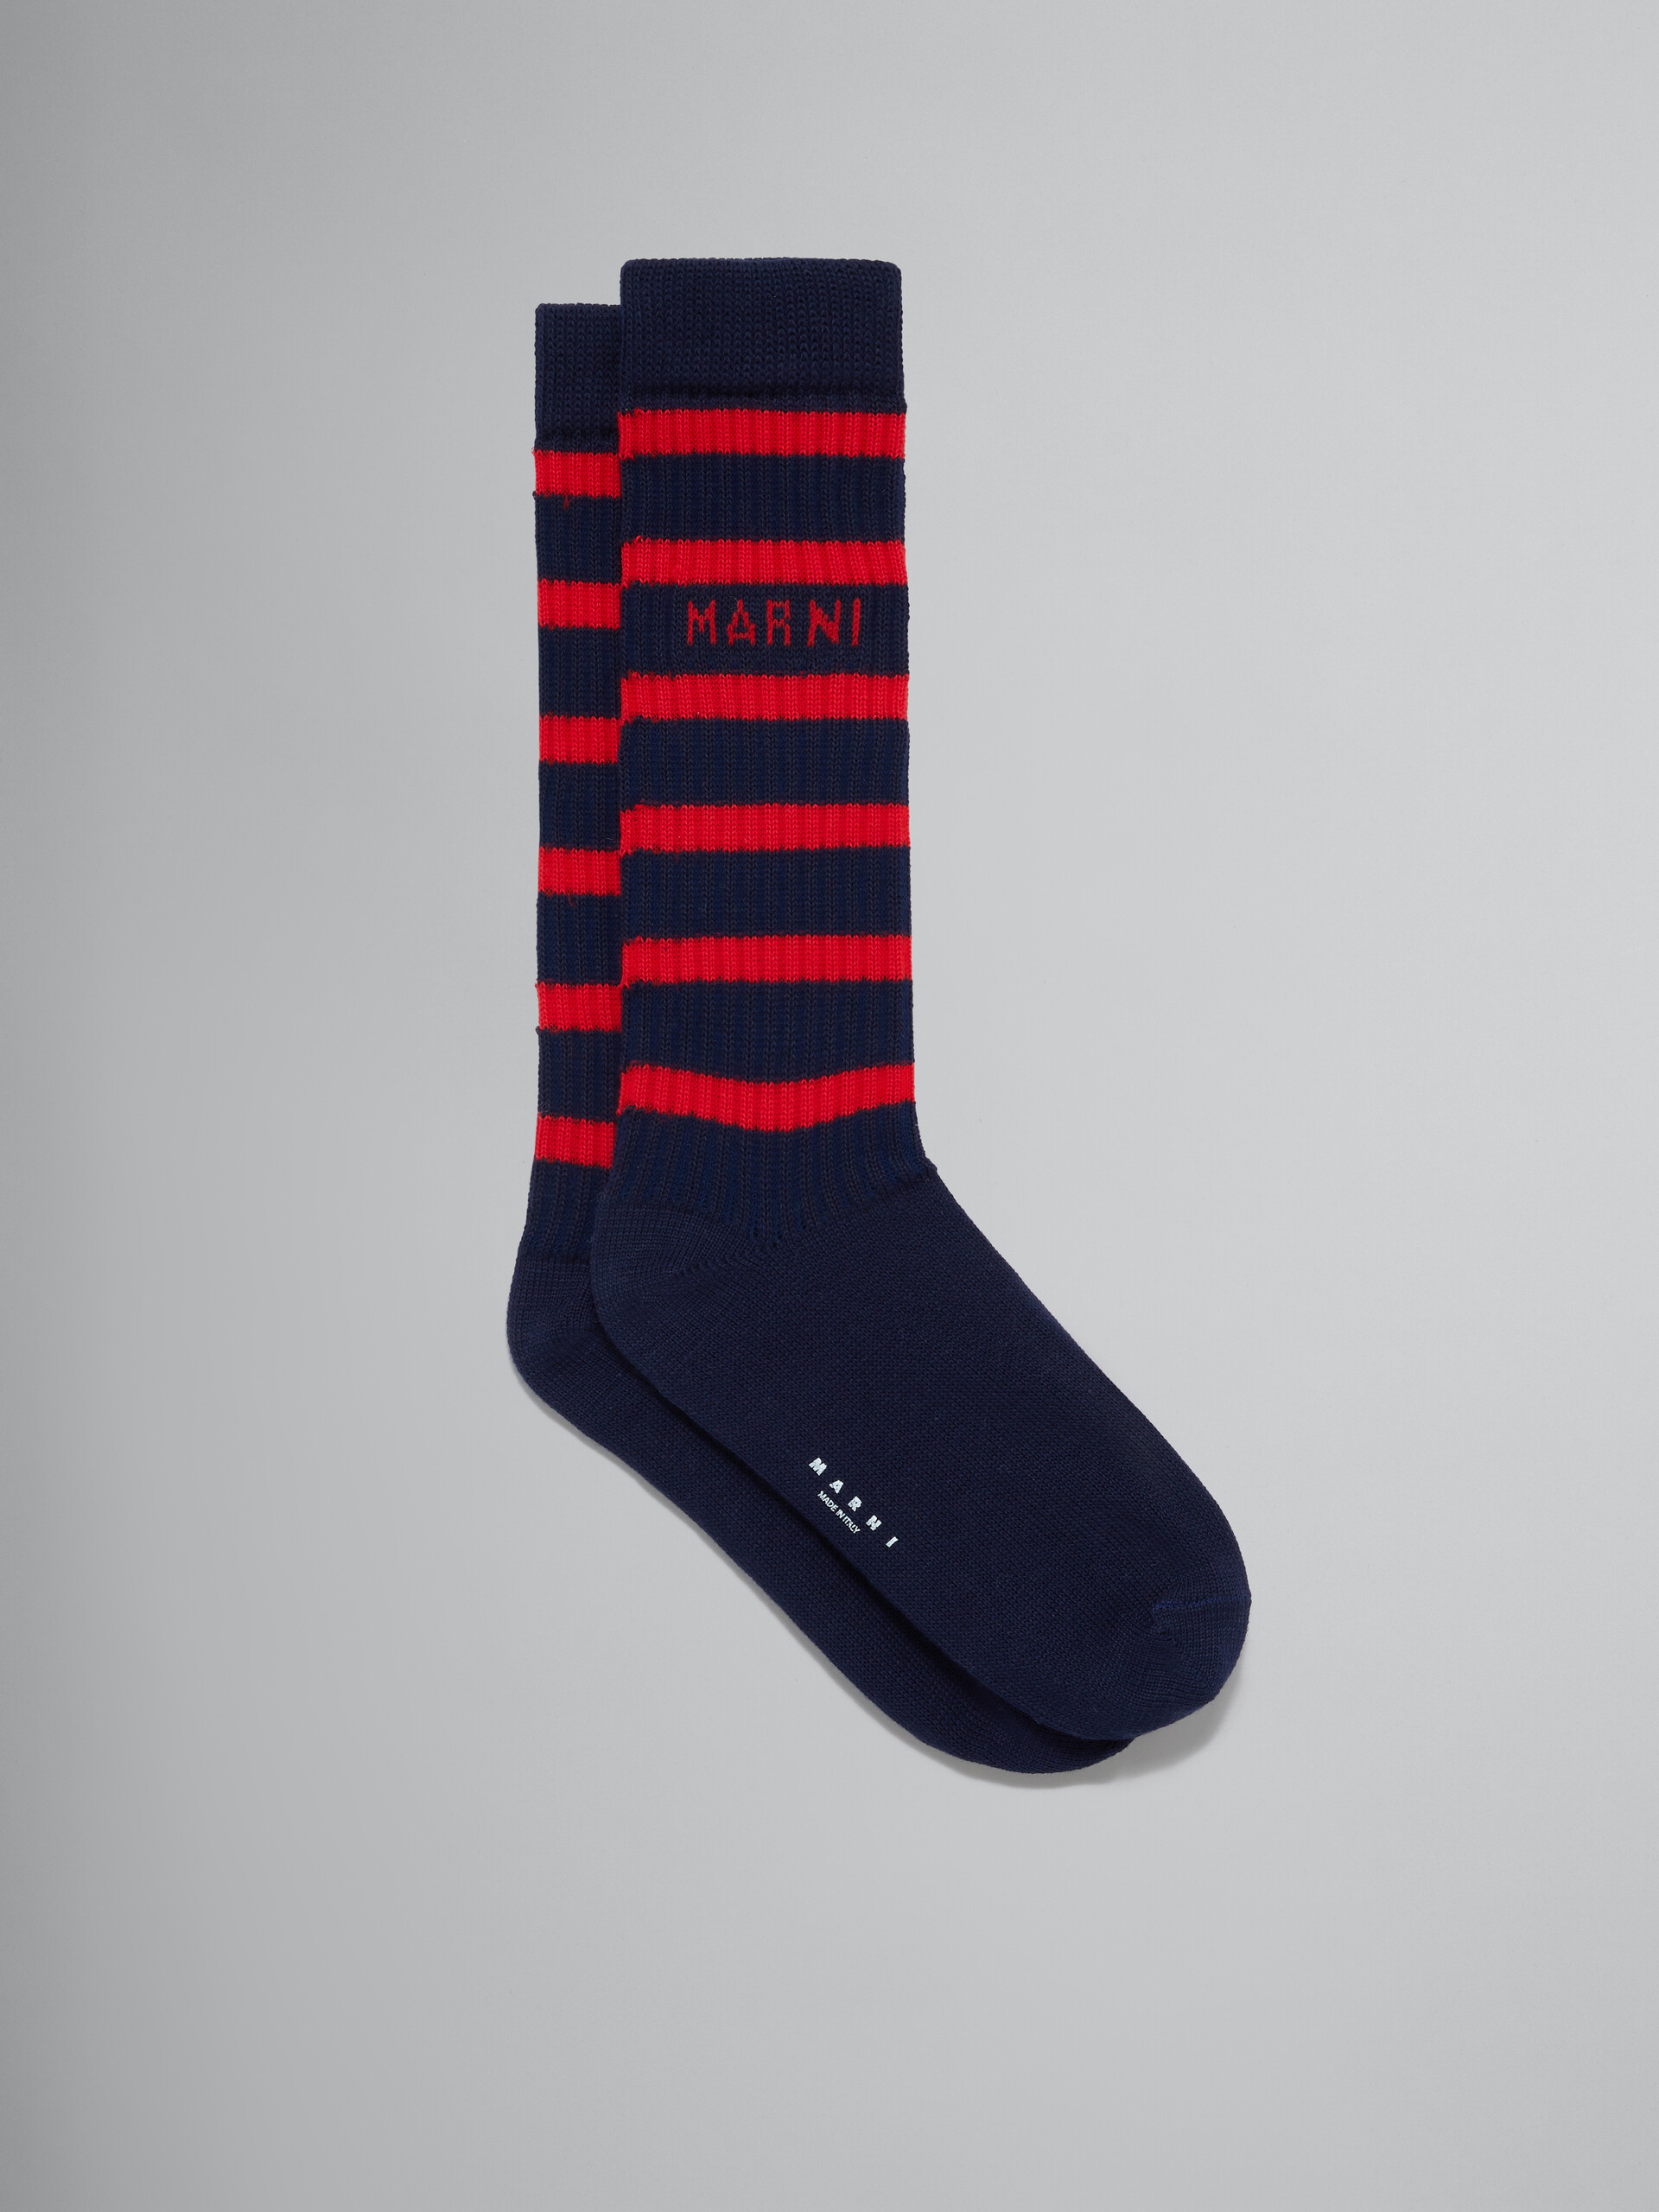 Gerippte Baumwollsocken mit maritimen Streifen in Marineblau - Socken - Image 1